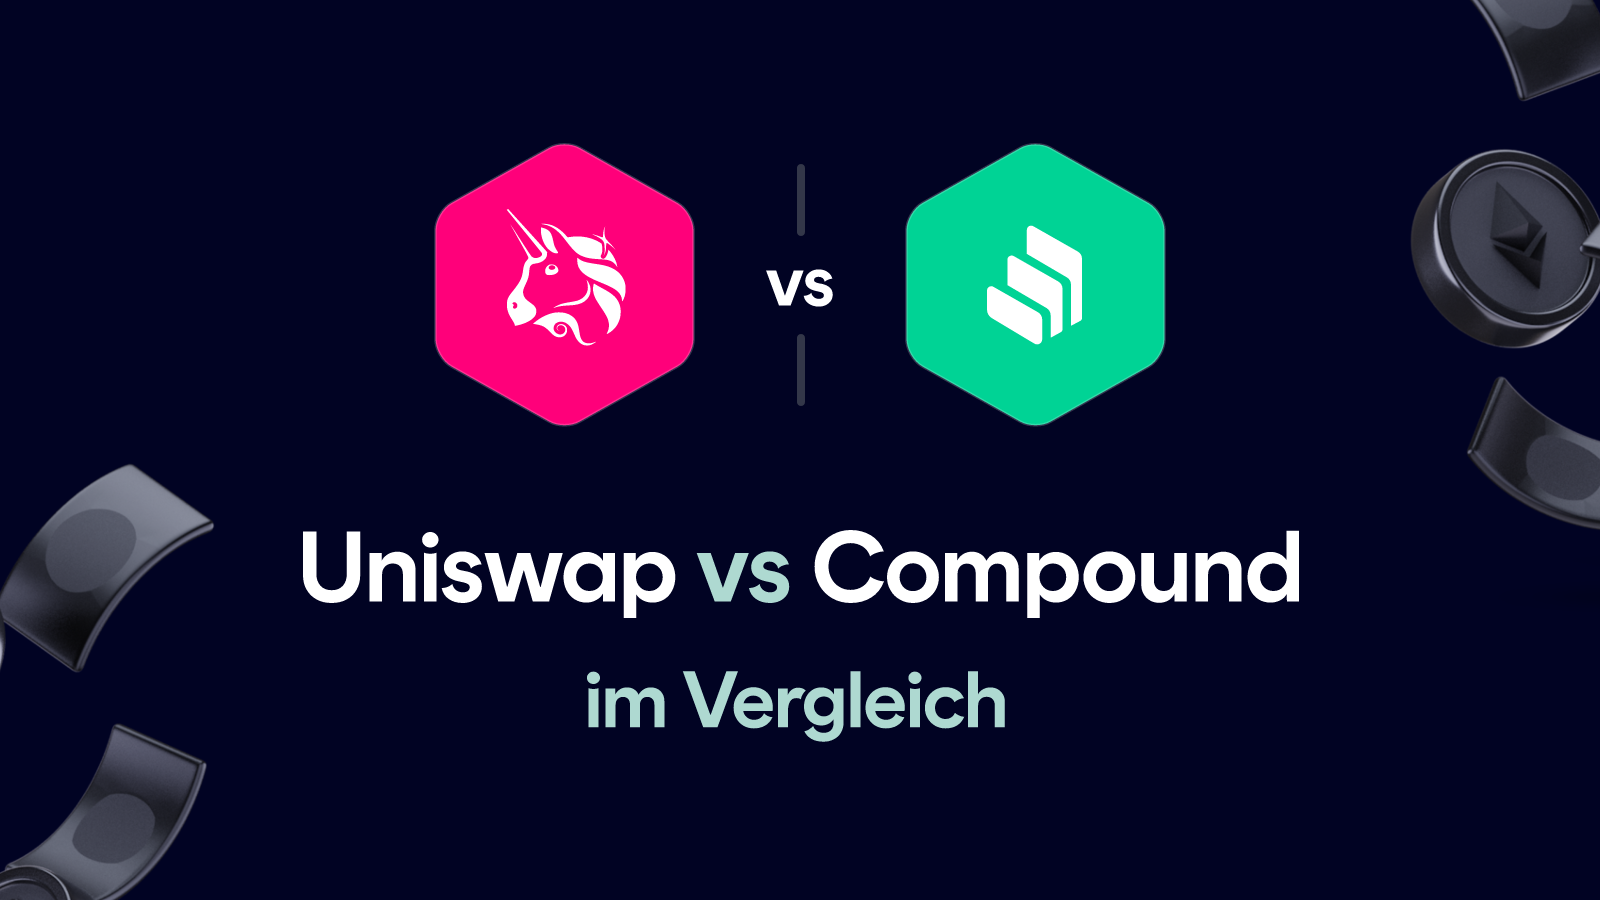 Uniswap vs Compound